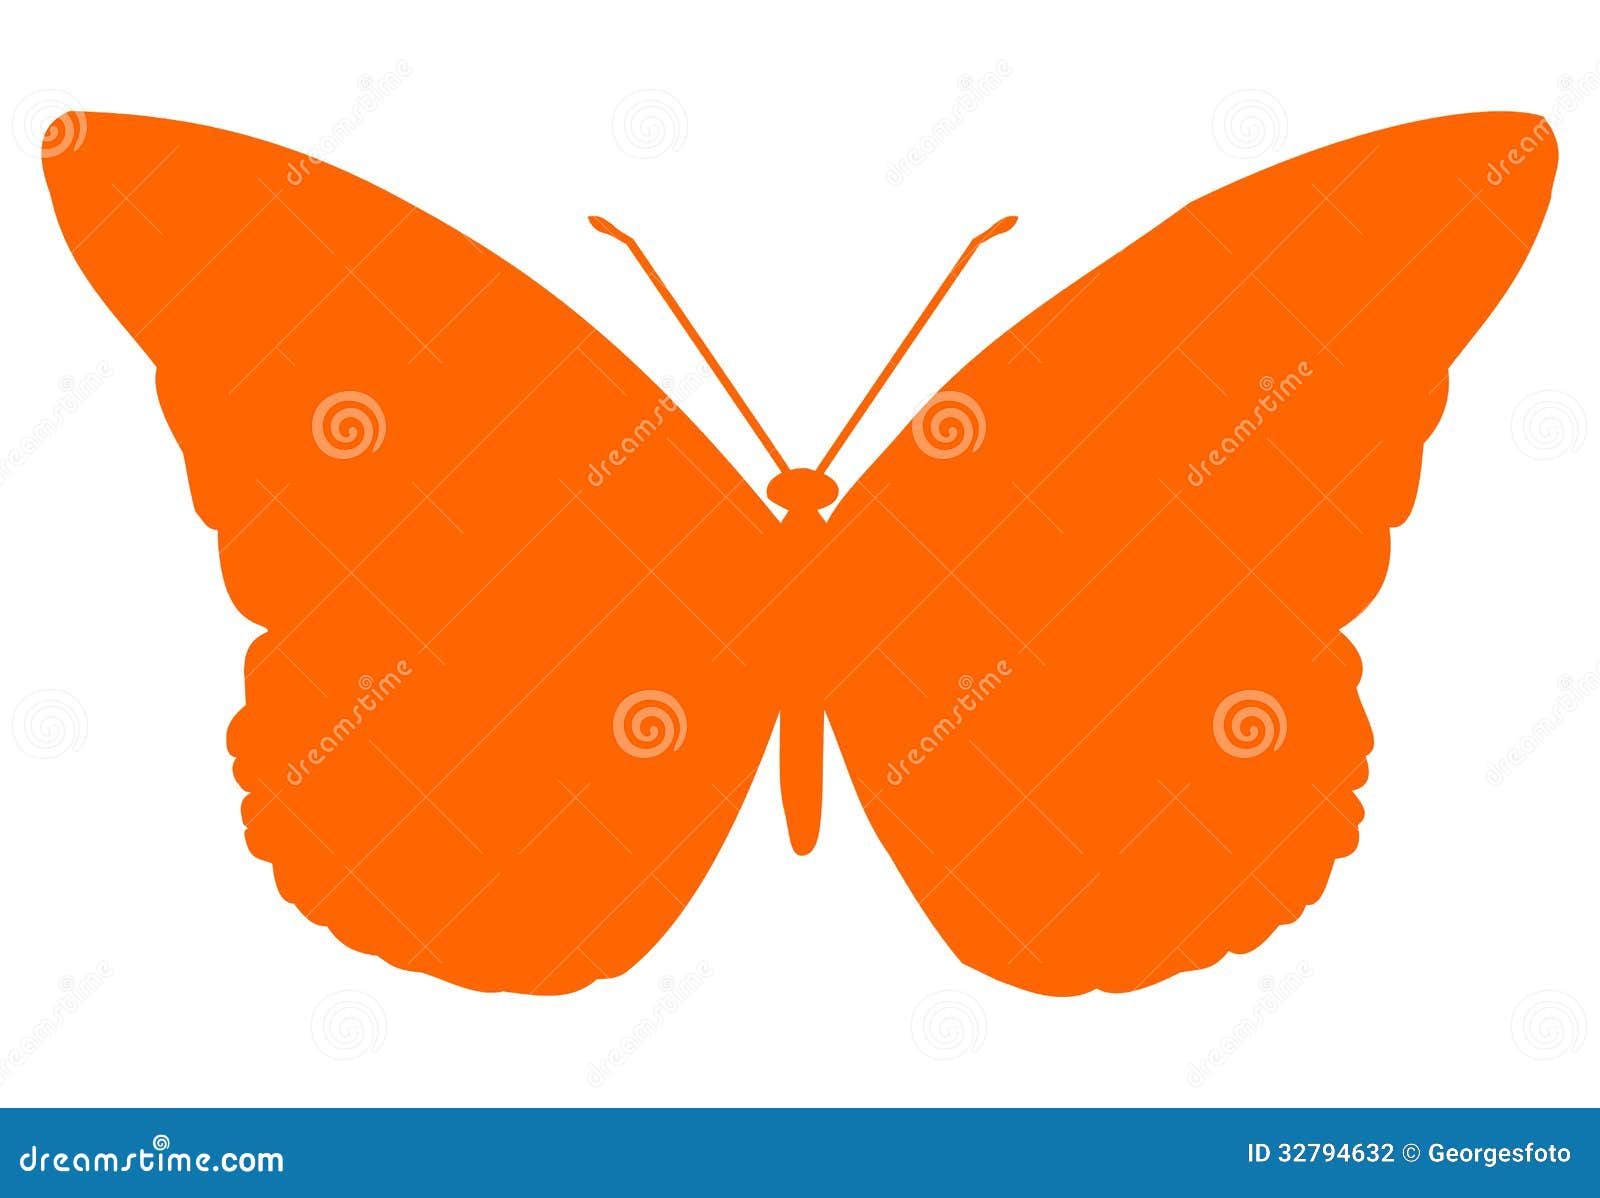 Πεταλούδα. Απομονωμένο πορτοκάλι έντομο πεταλούδων στο άσπρο υπόβαθρο.